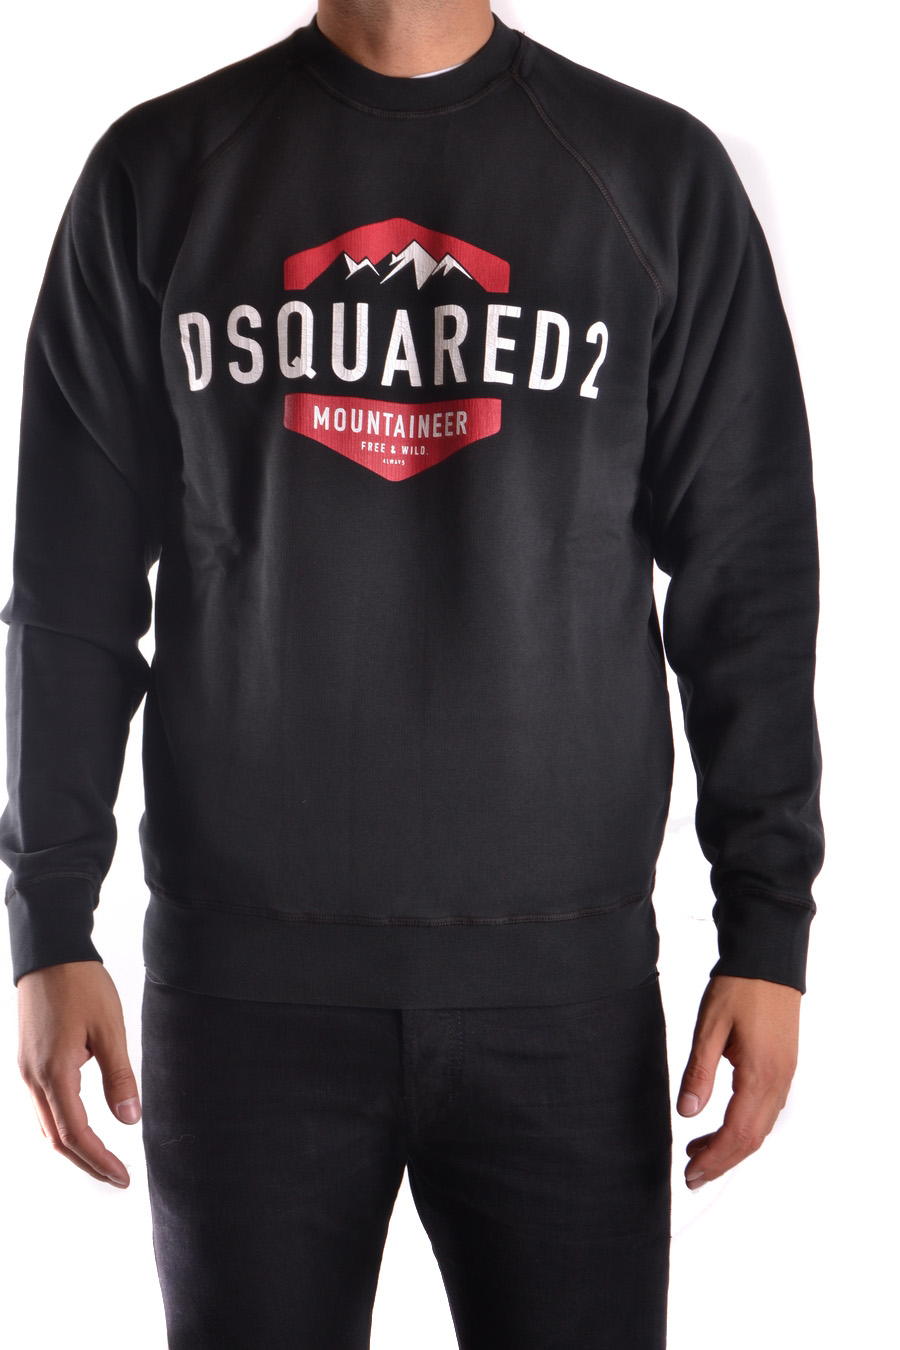 DSQUARED2 Sweatshirts | ViganoBoutique.com